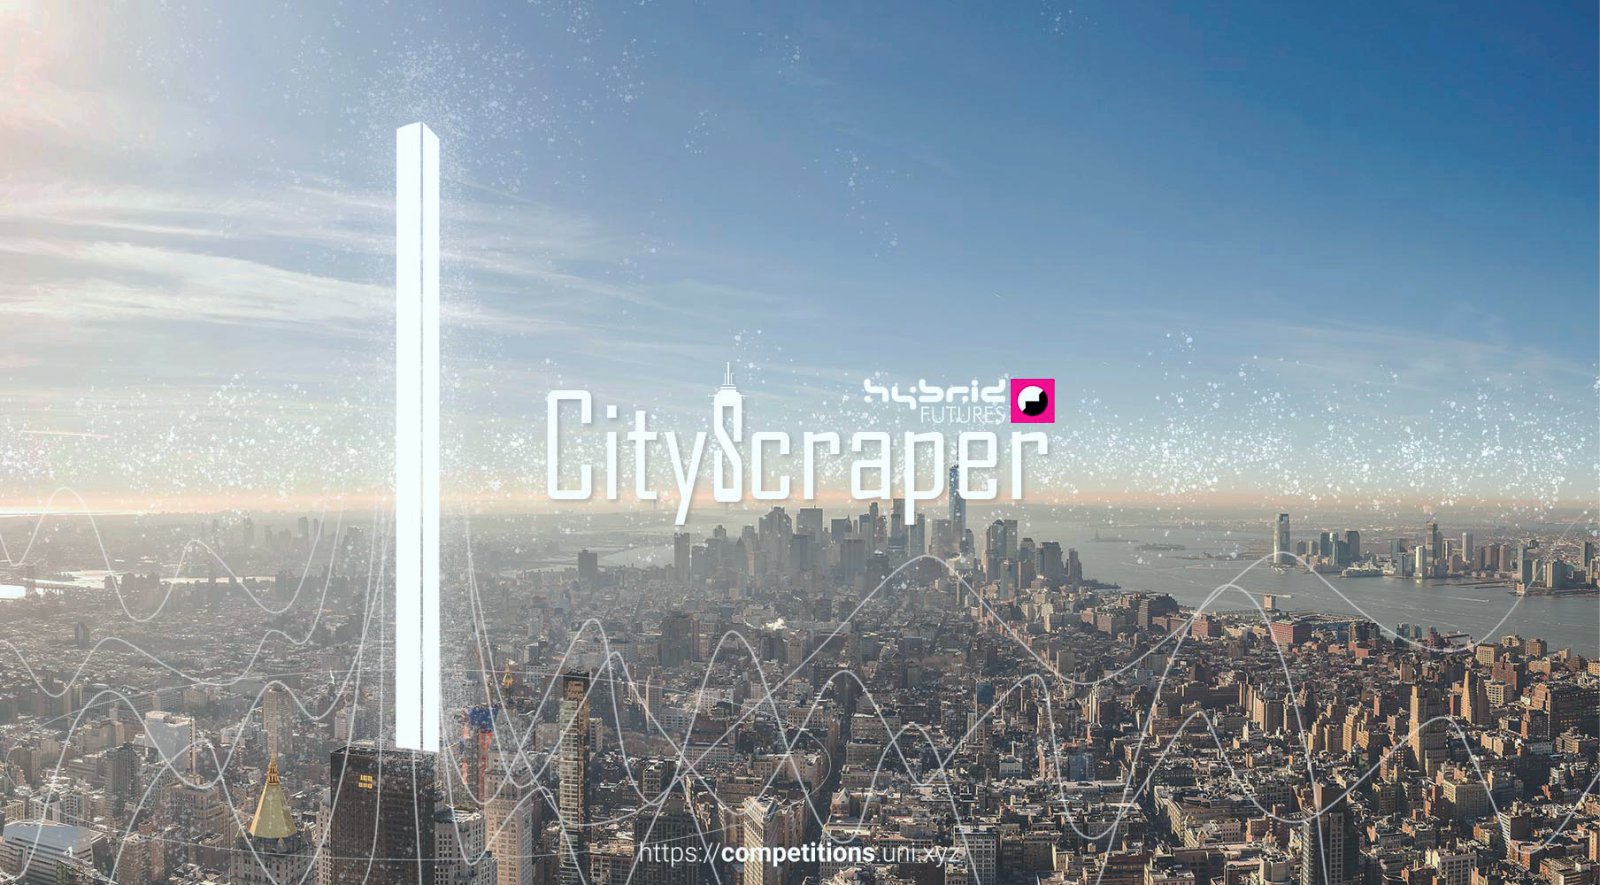 CityScraper